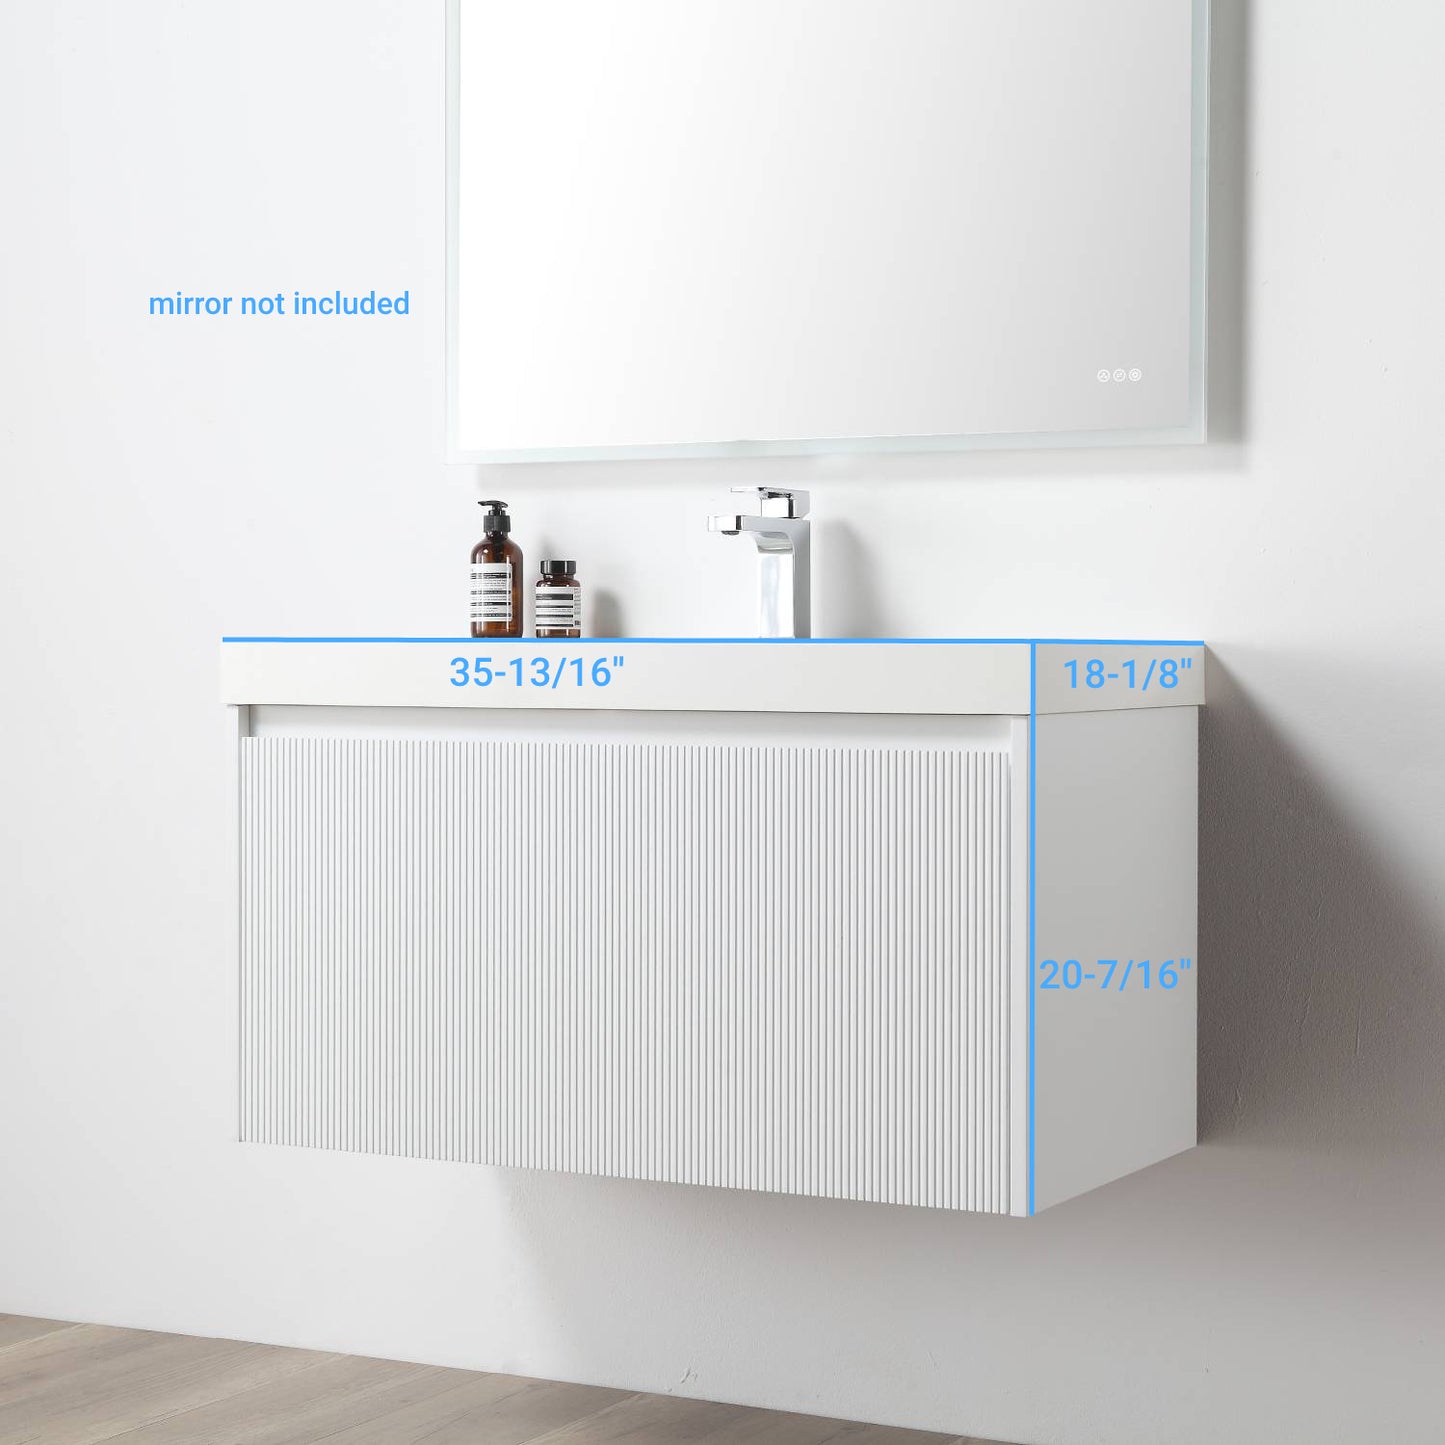 Positano 36" Floating Bathroom Vanity with Acrylic Sink - Matte White